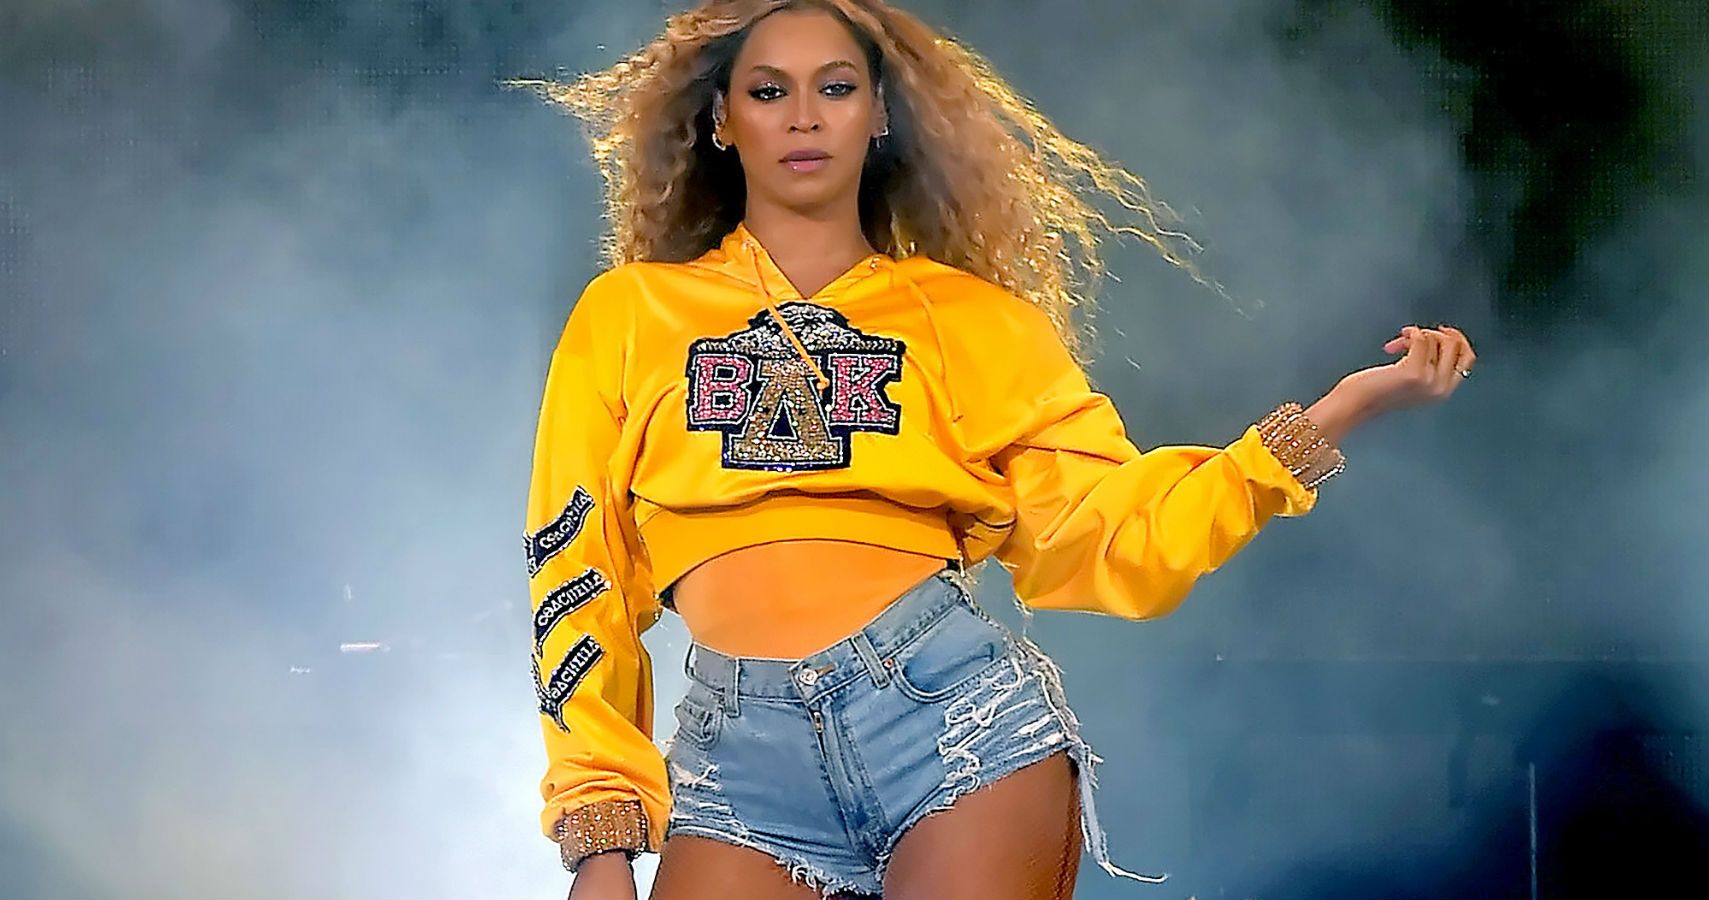 As melhores reações no Twitter ao desempenho de Beyoncé no Coachella